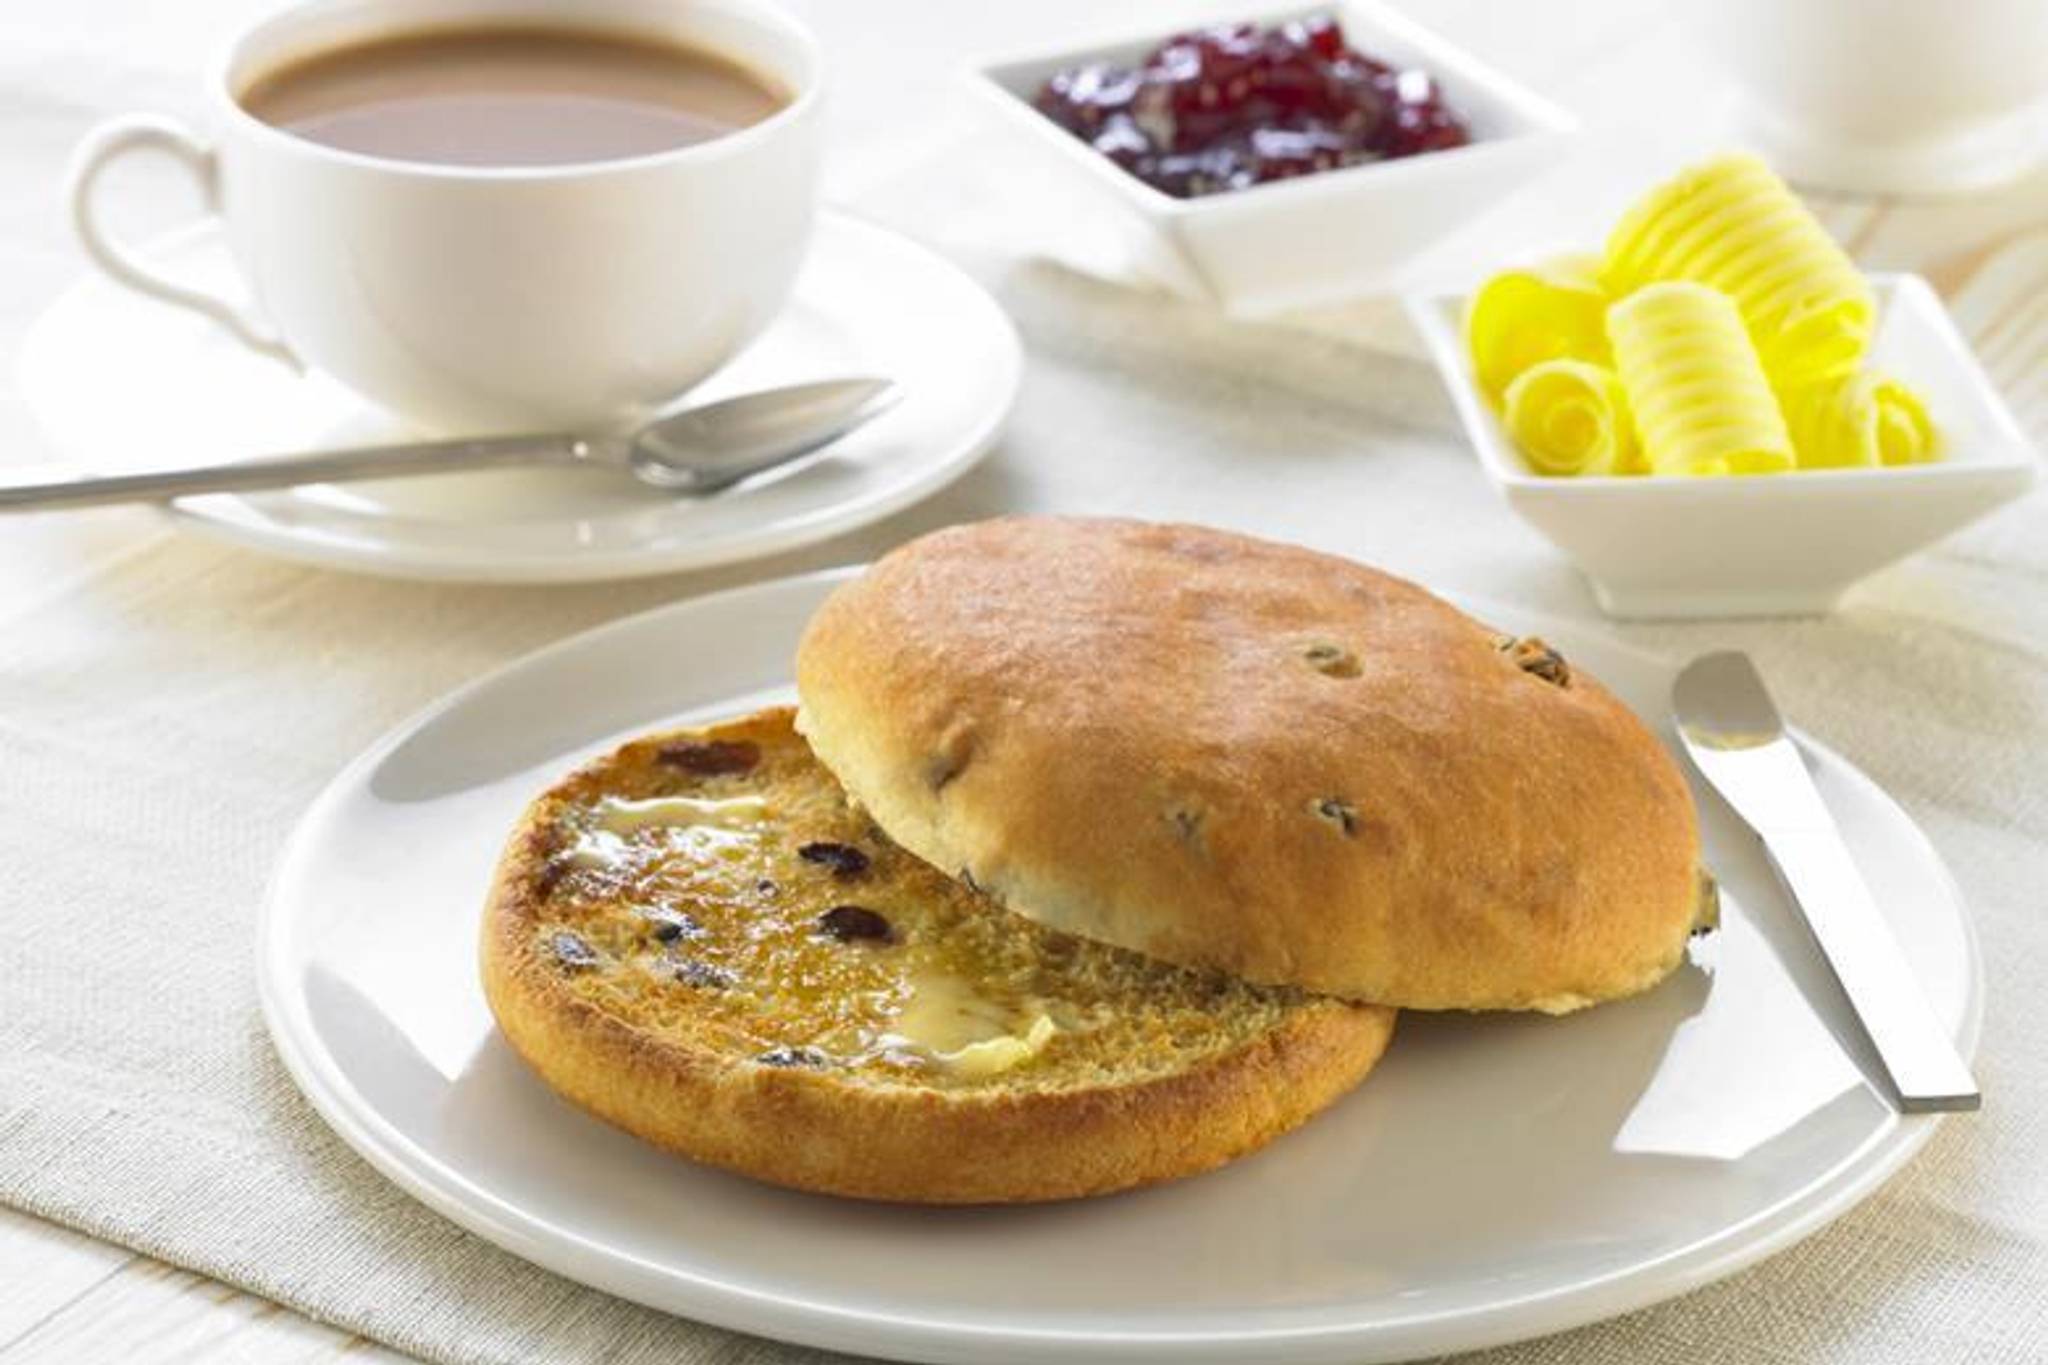 Britons turn to teacakes for a sense of nostalgia